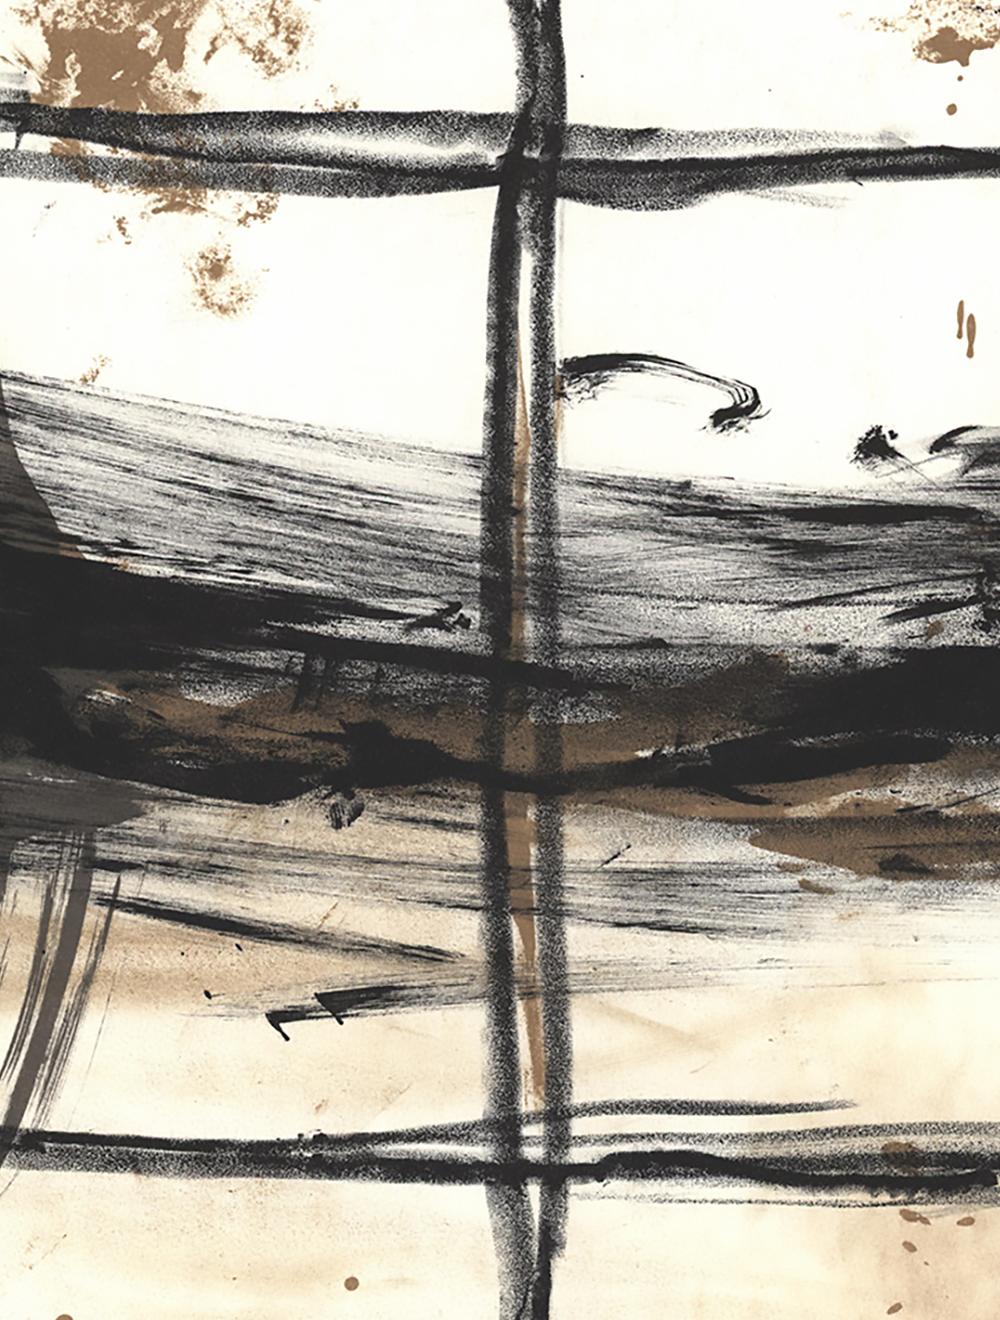 1960s Antoni Tàpies Derrière le miroir cover (Tàpies prints)  2